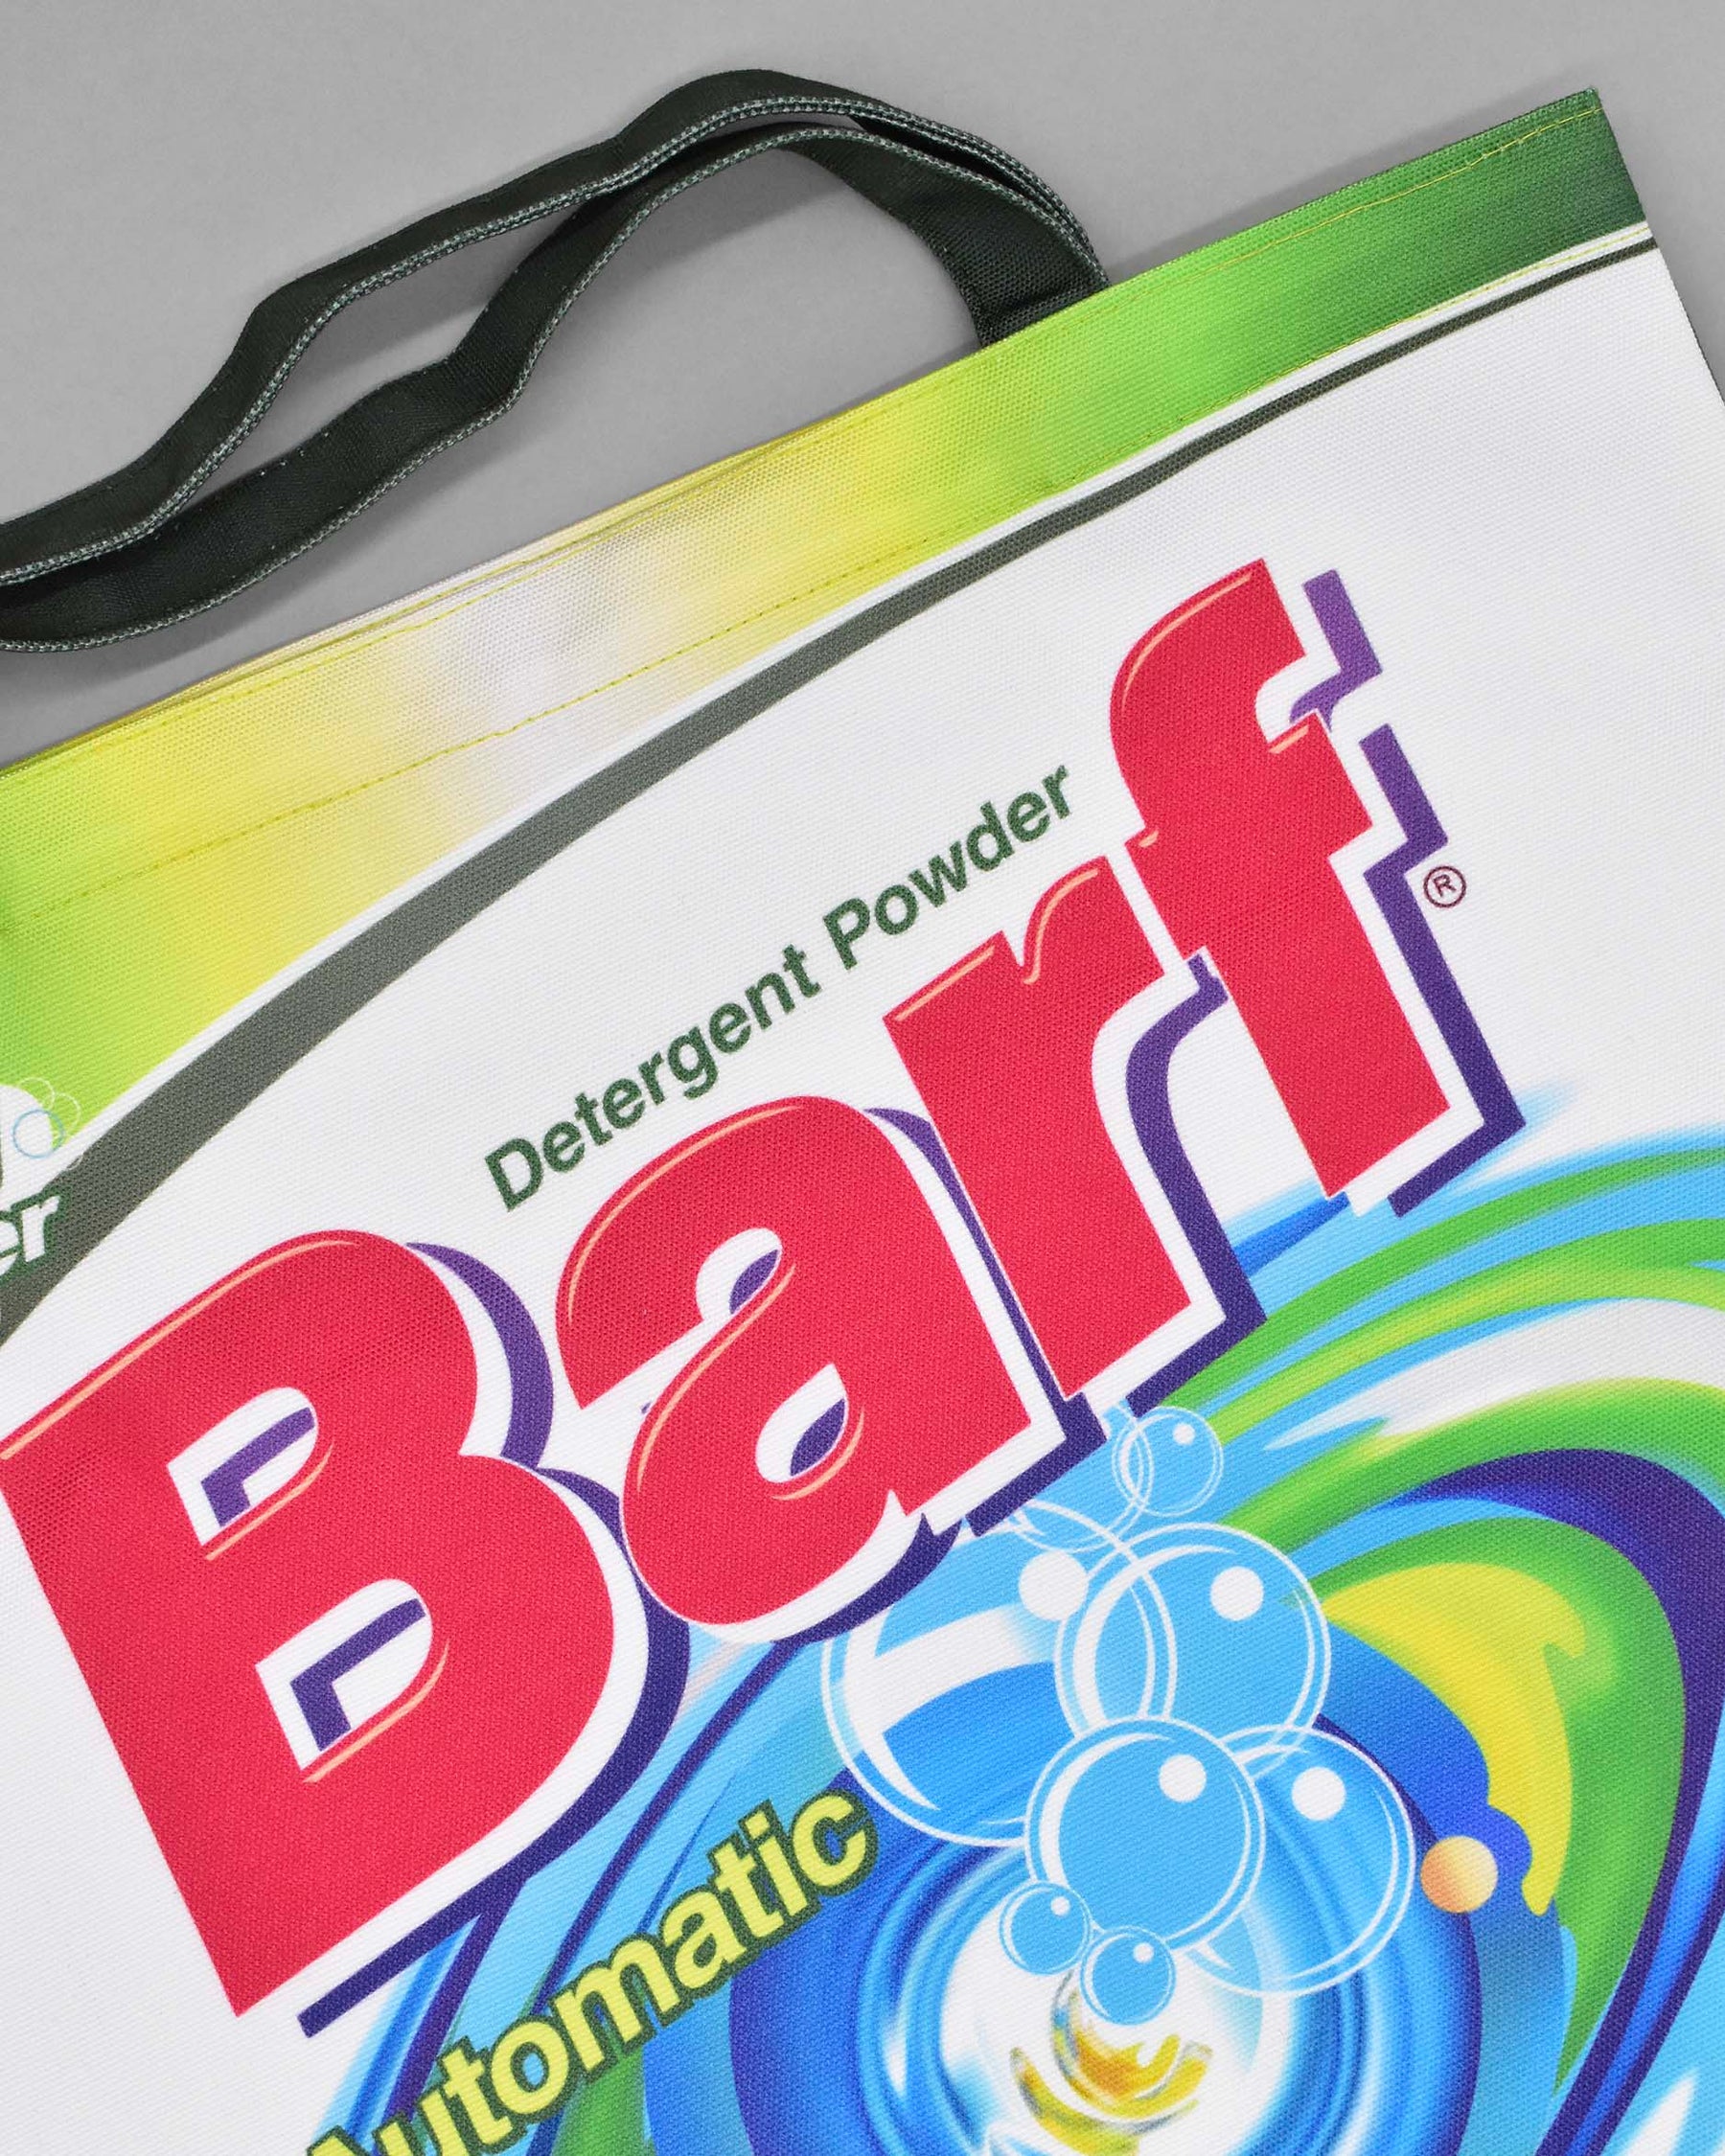 Barf Detergent Bag